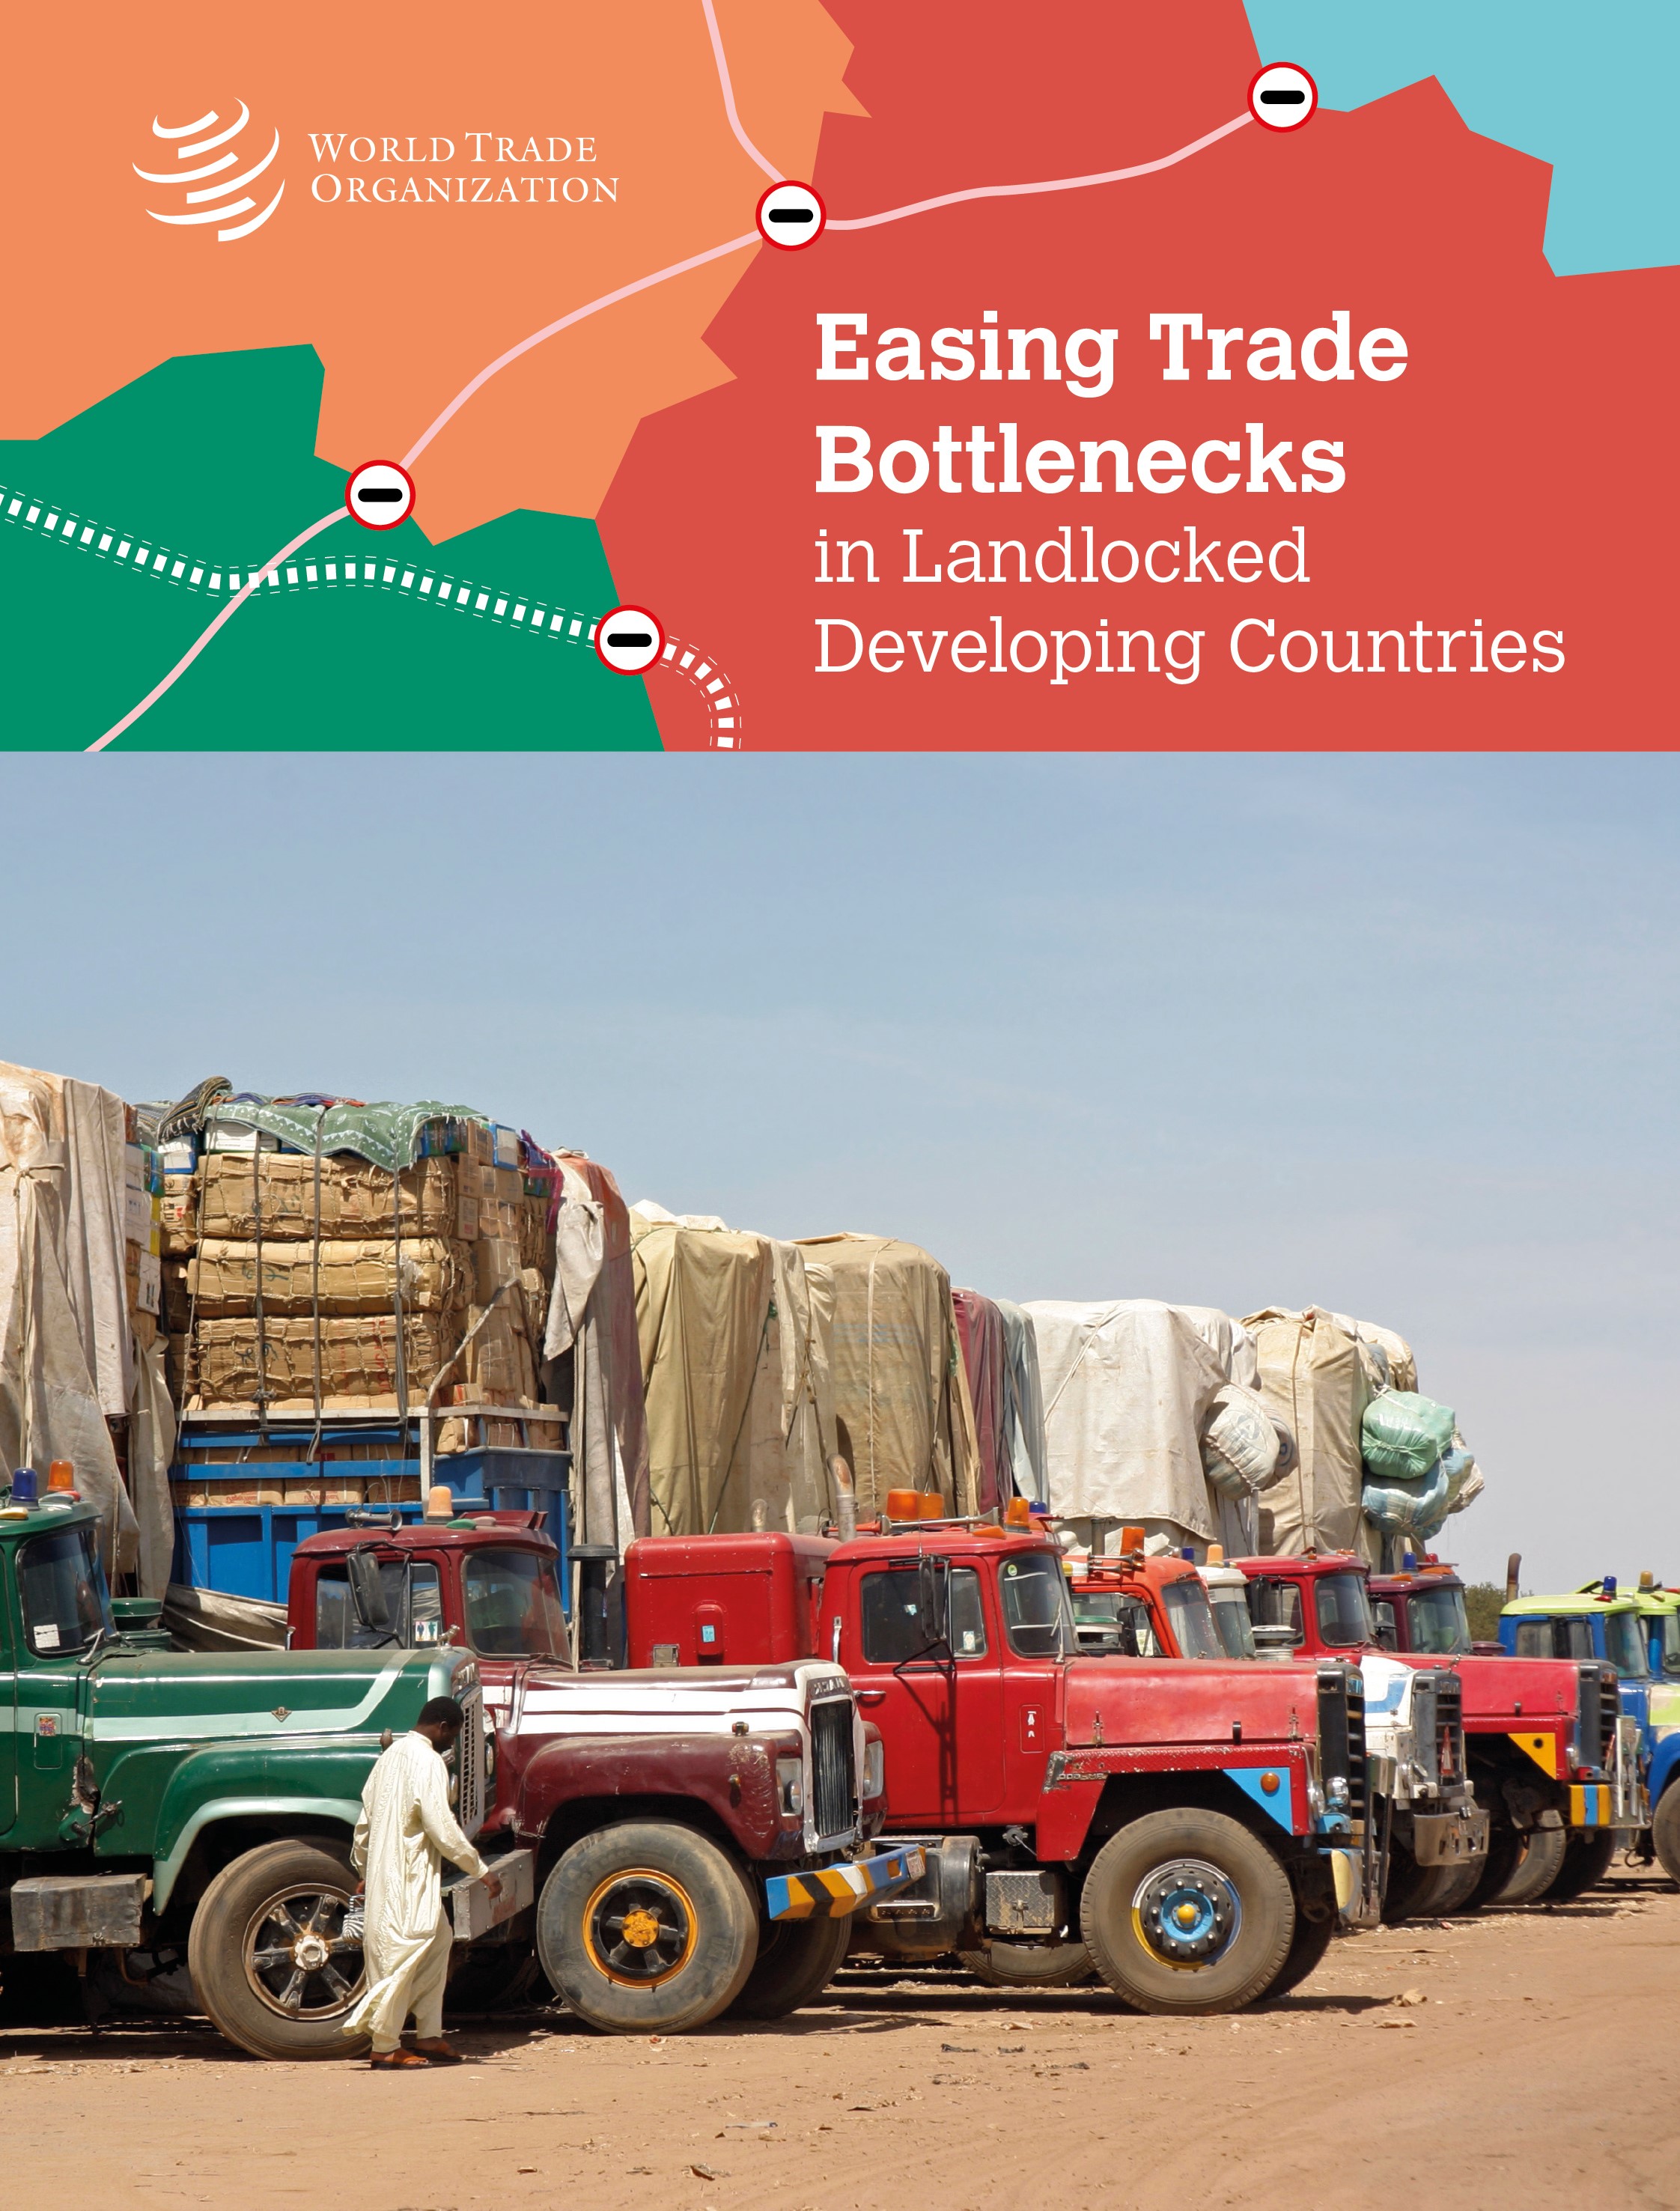 image of Landlocked developing countries and trade bottlenecks